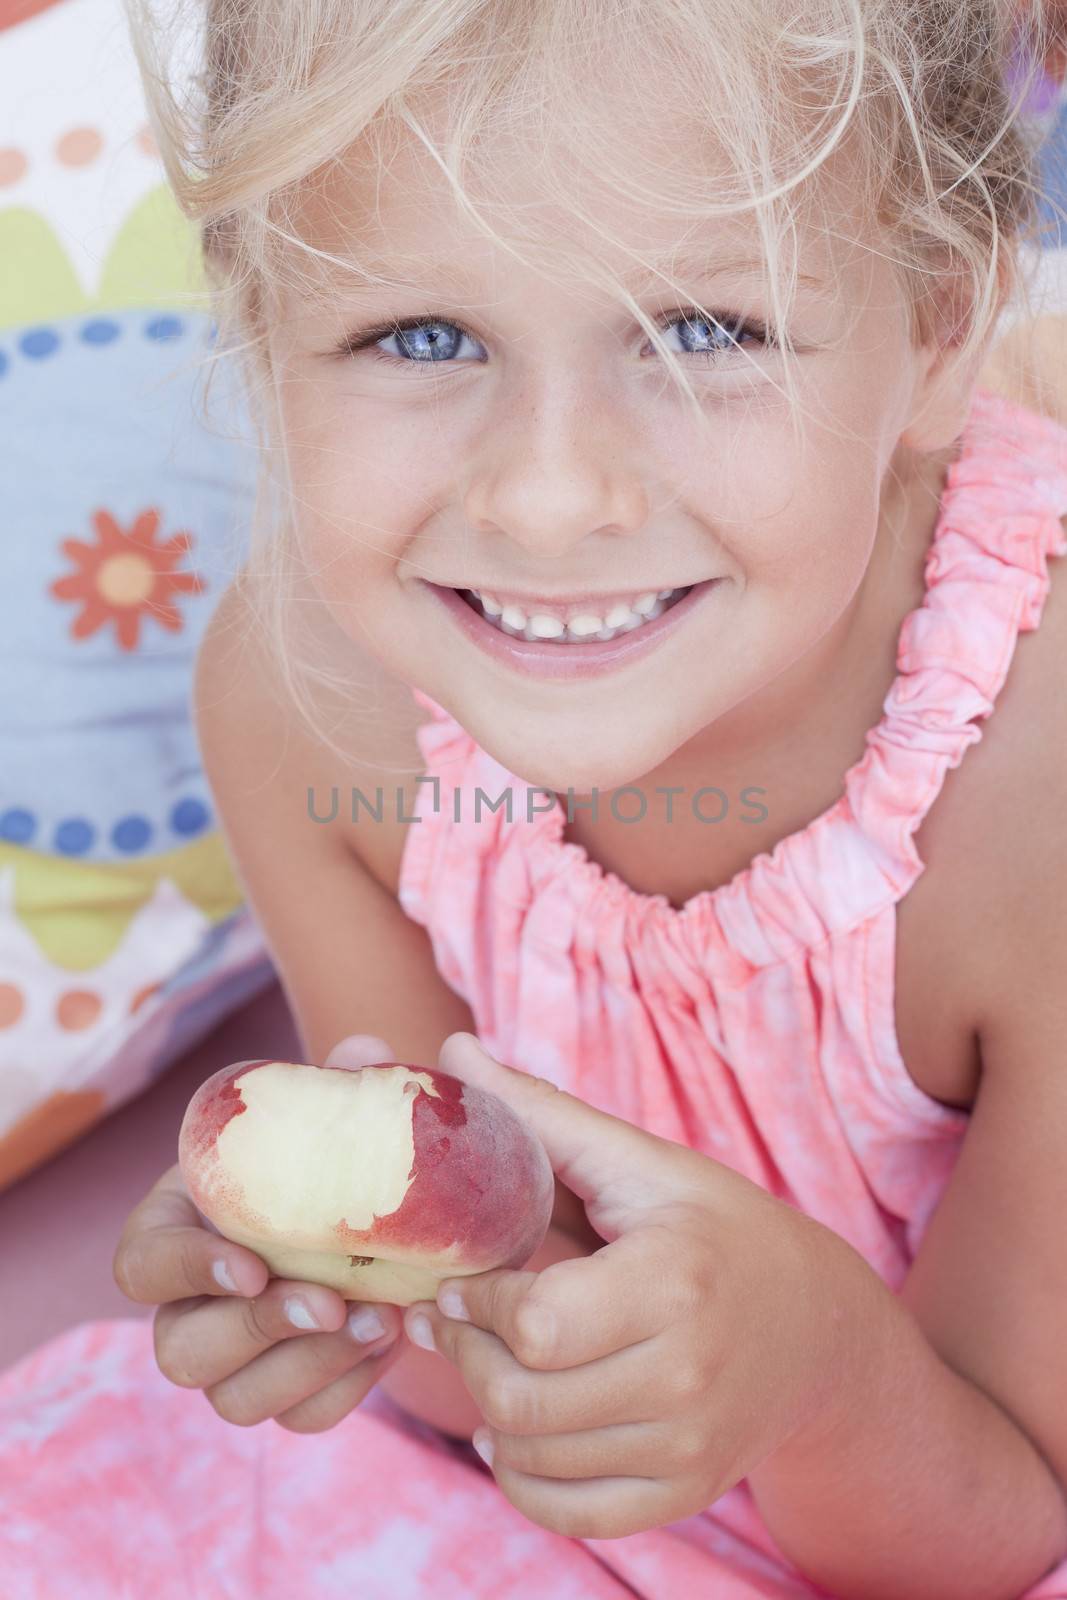 A girl holding a bitten flat peach, so called peento